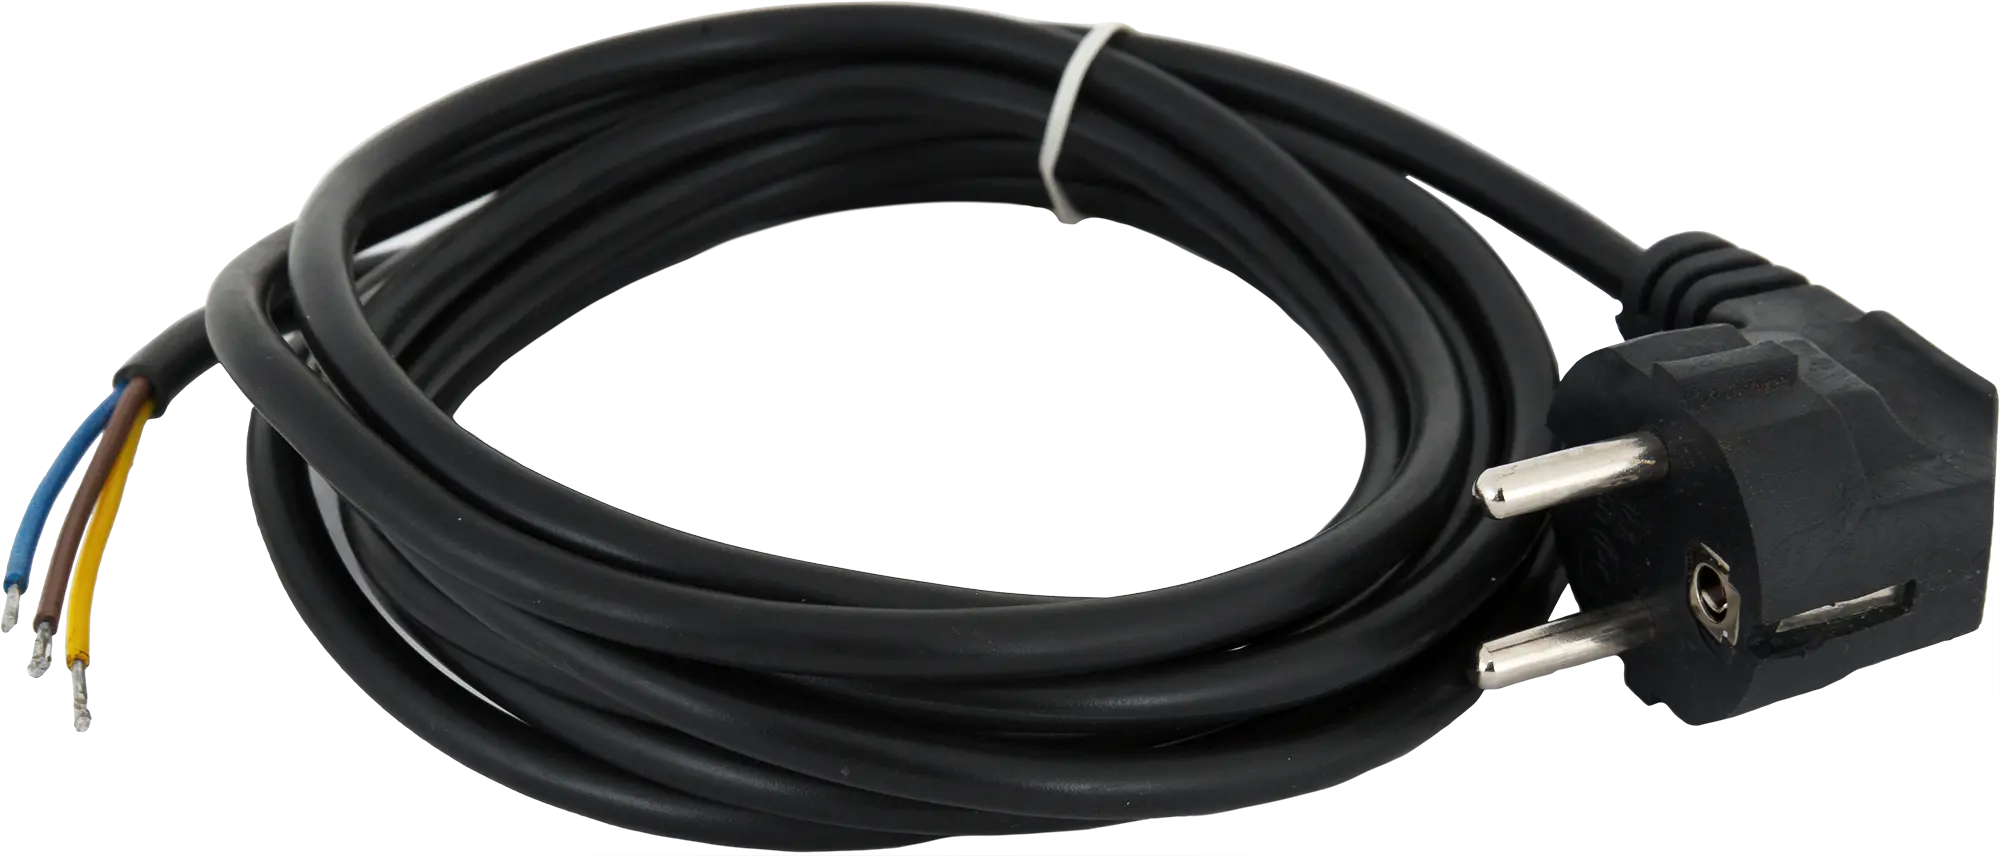 Шнур сетевой с заземлением 10 A 3 м цвет чёрный шнур сетевой с ножным выключателем чёрный 3 5 м